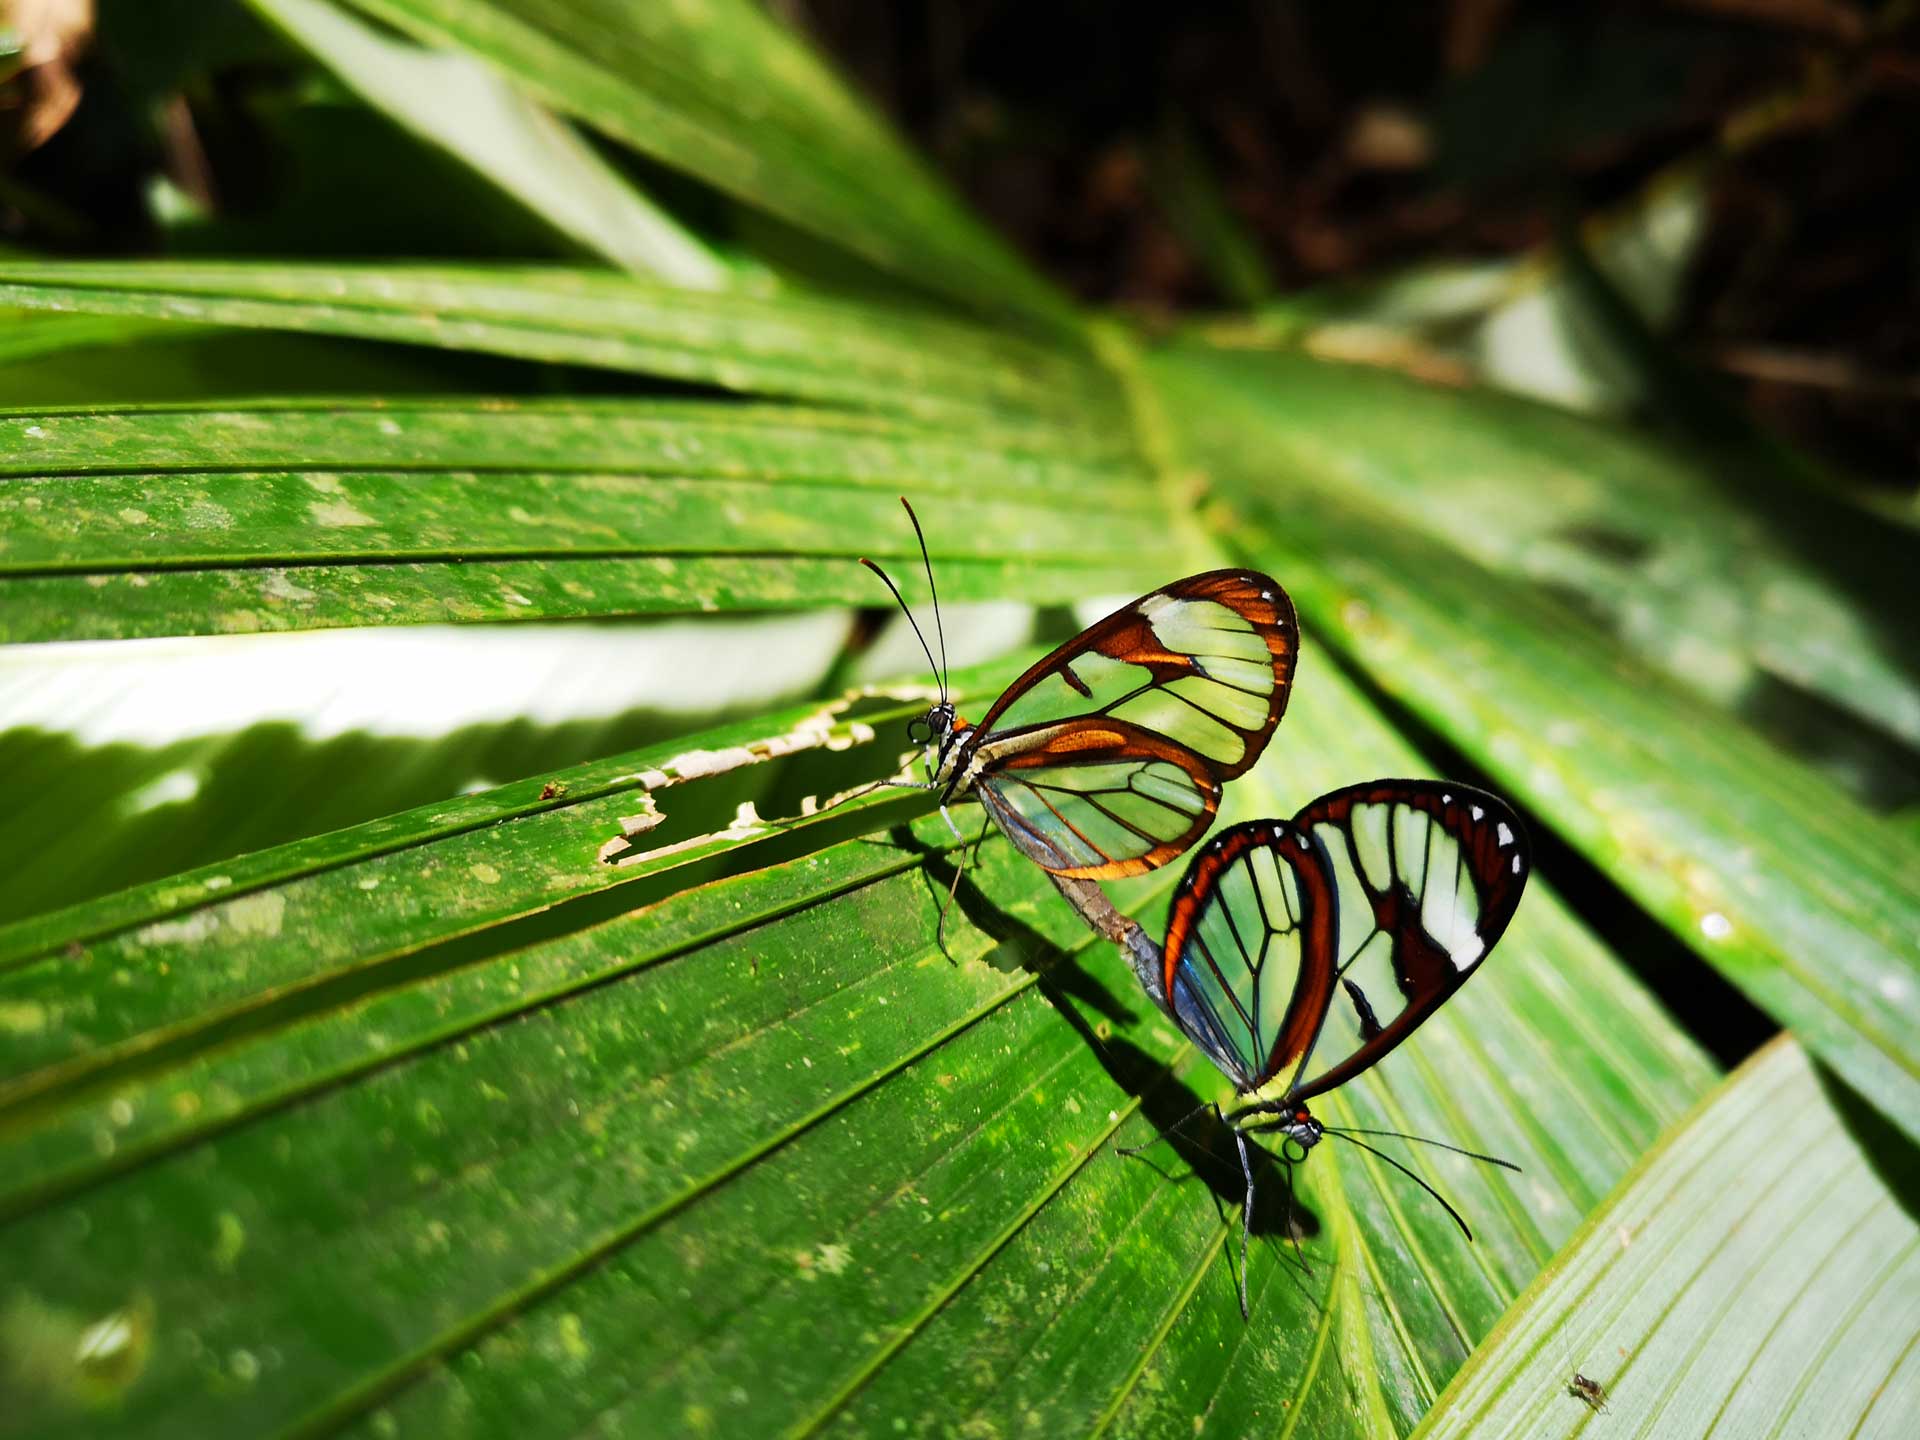 Stage en onderzoek in het regenwoud van Costa Rica